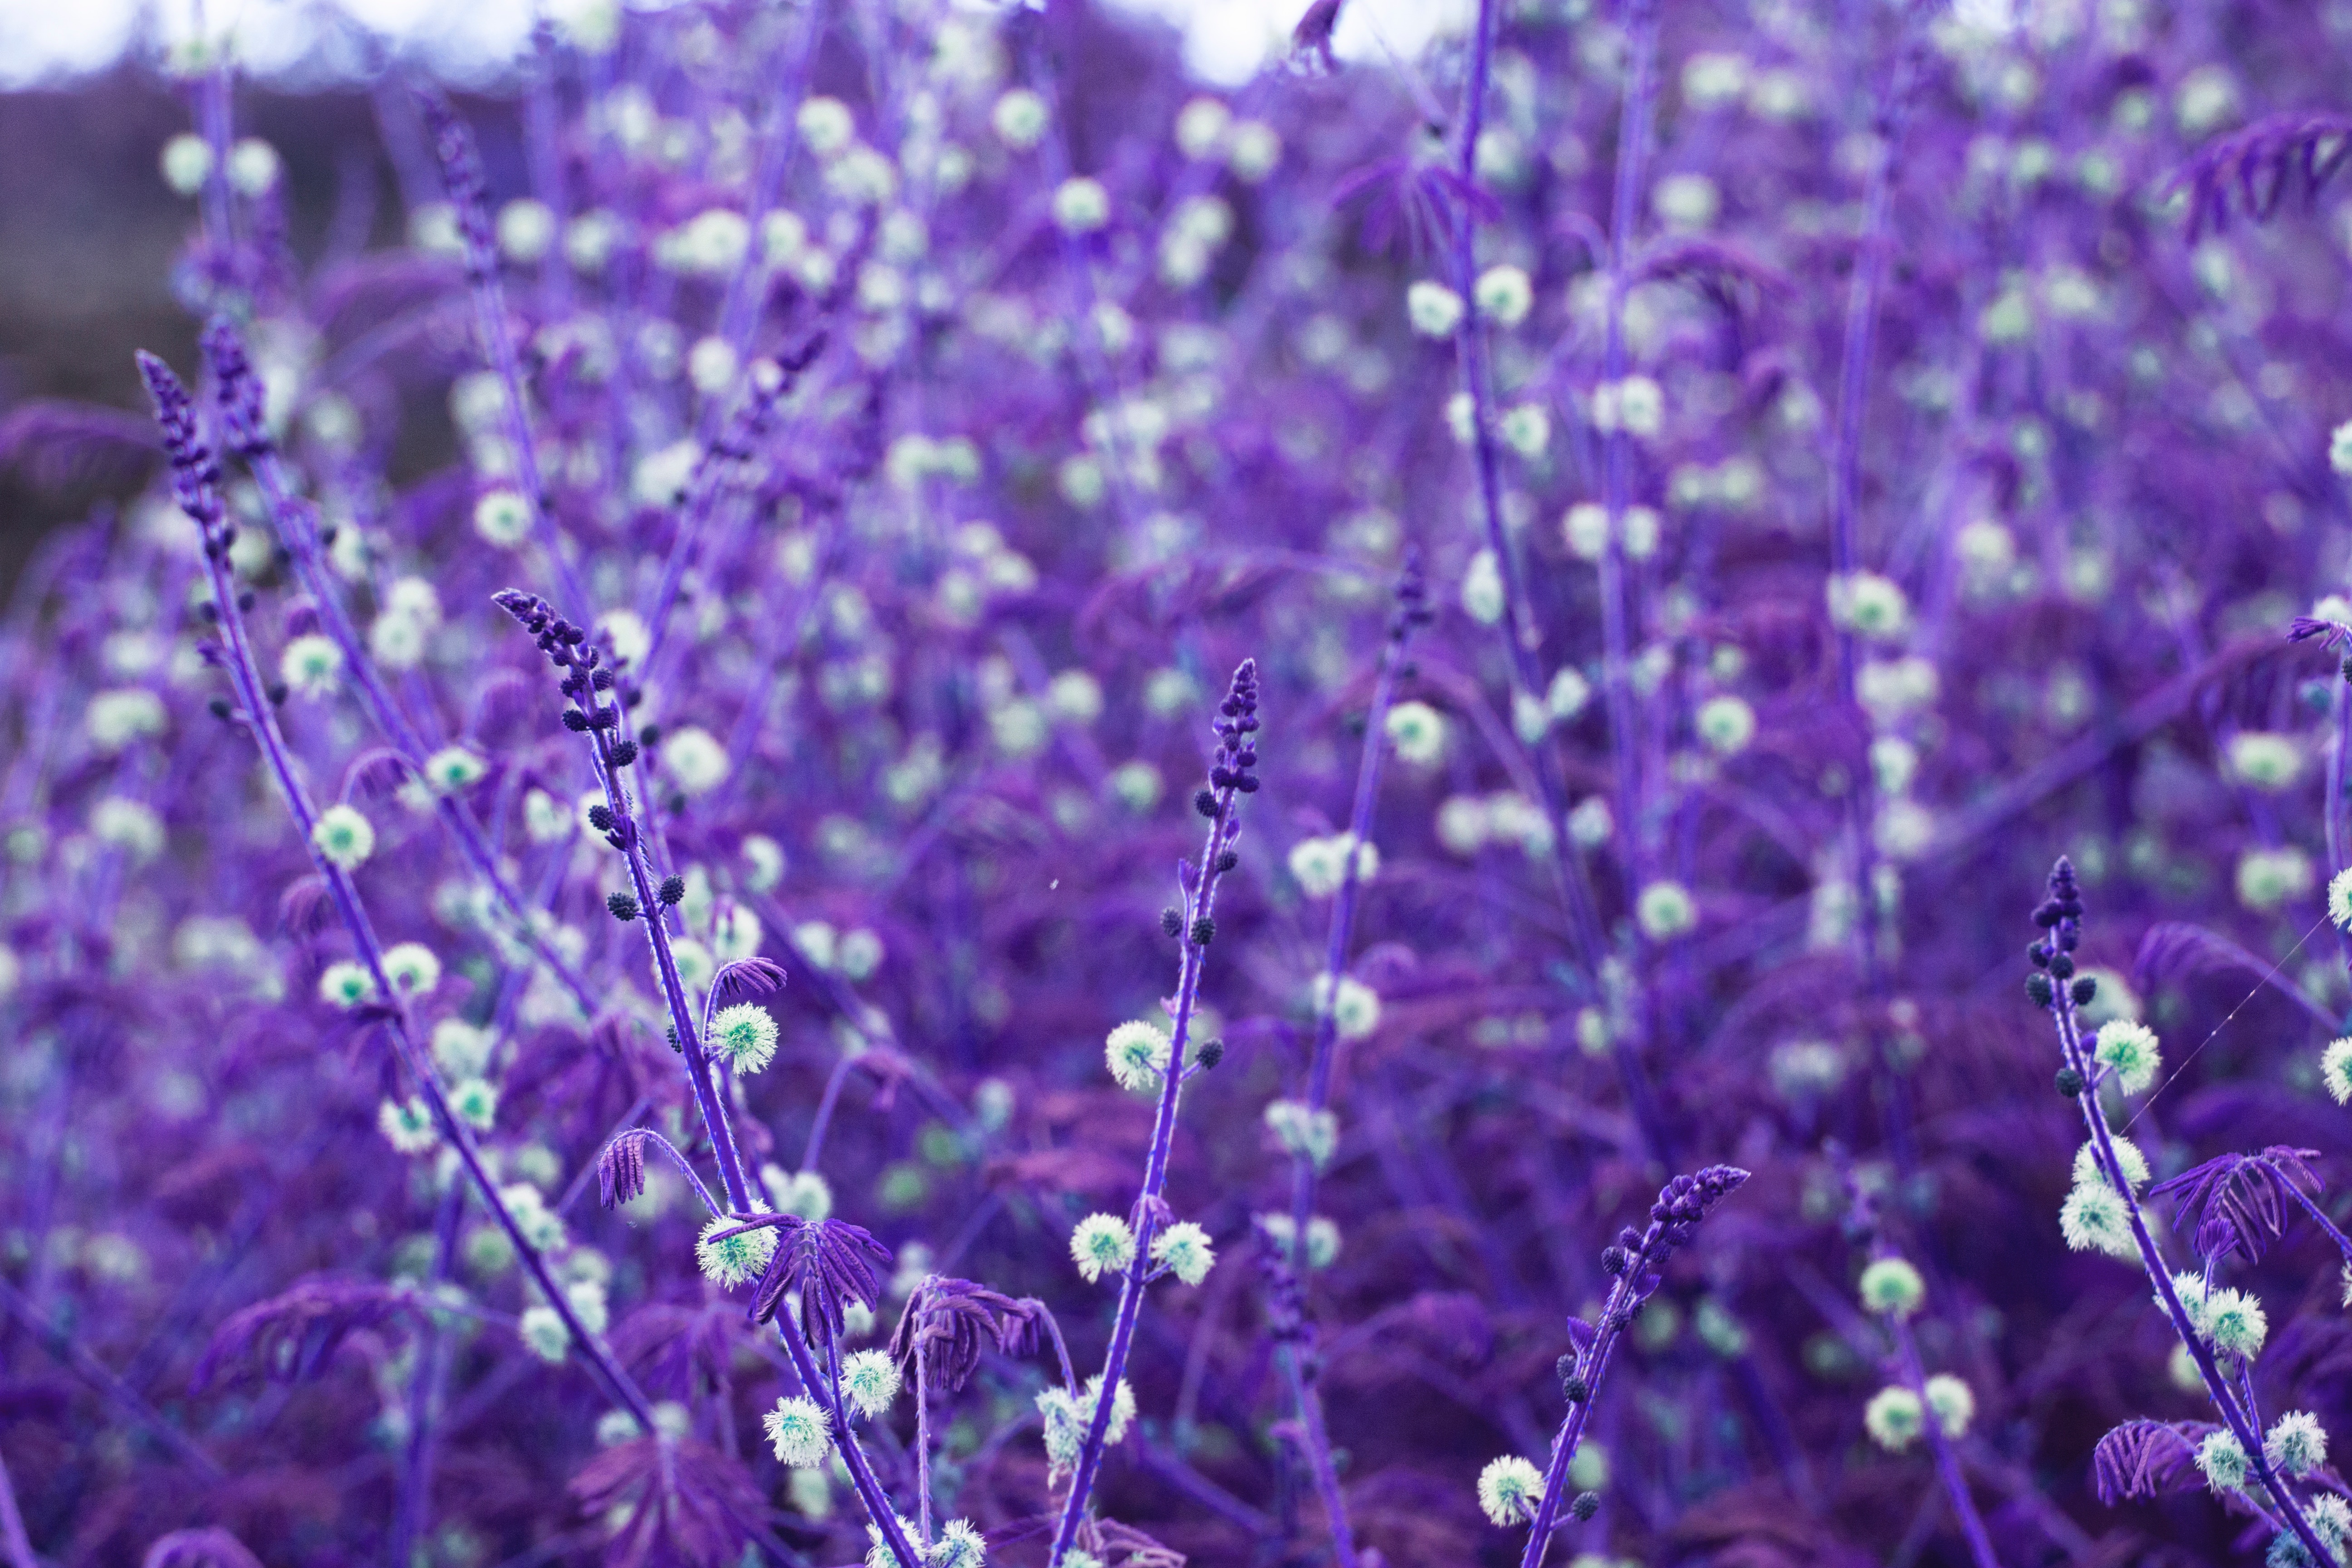 Wallpapers plant flower violet on the desktop